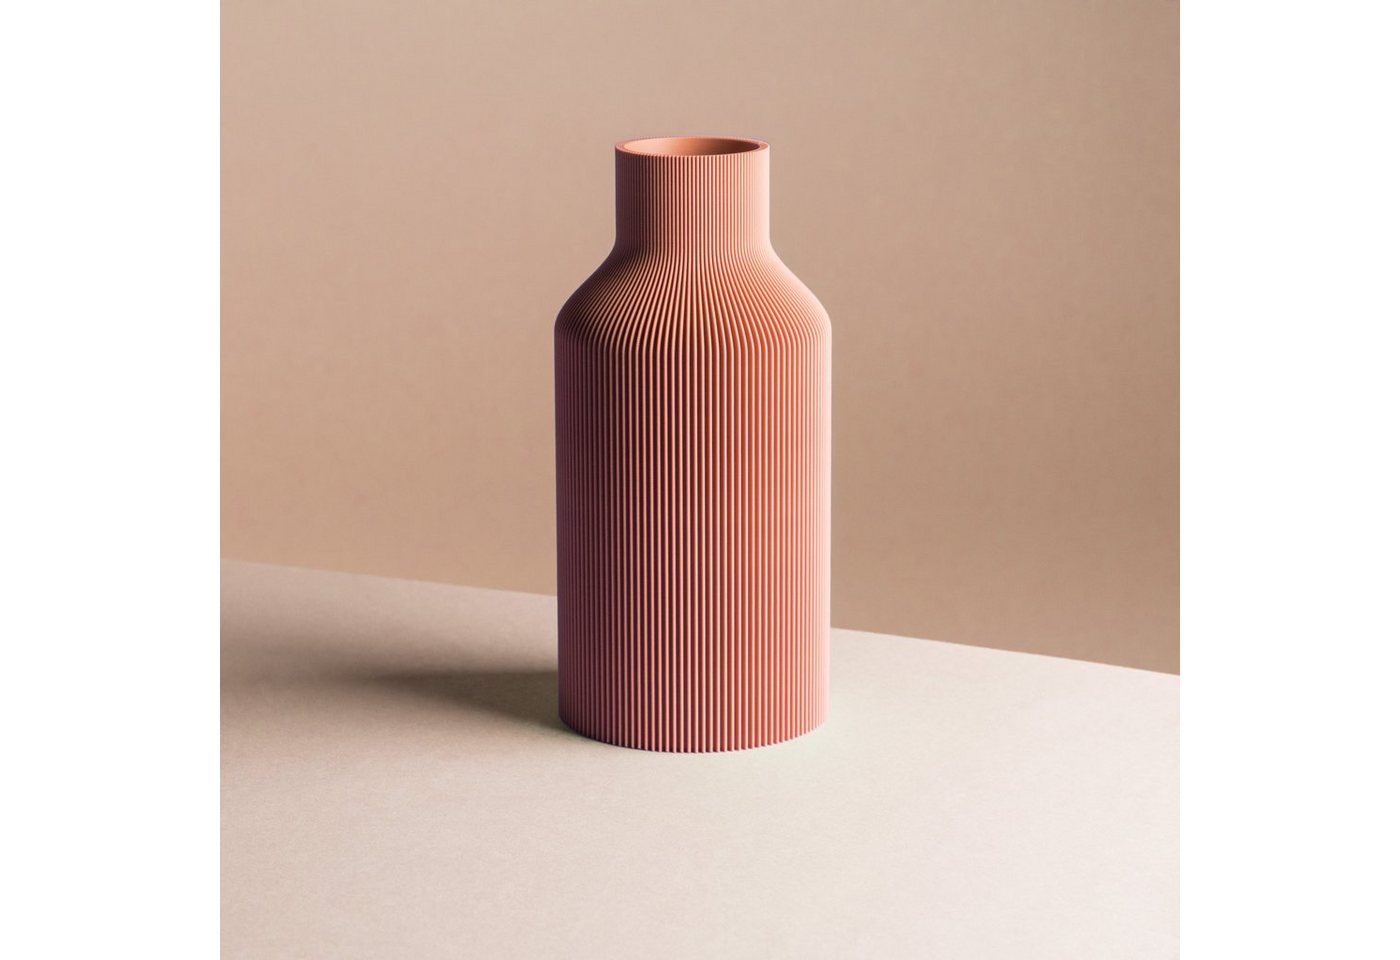 Dennismaass. Dekovase FLASCHE, 3D Druck, wundervolle Rillen-Optik, H 27cm, dekorative Vase aus dem 3D Drucker von Dennismaass.